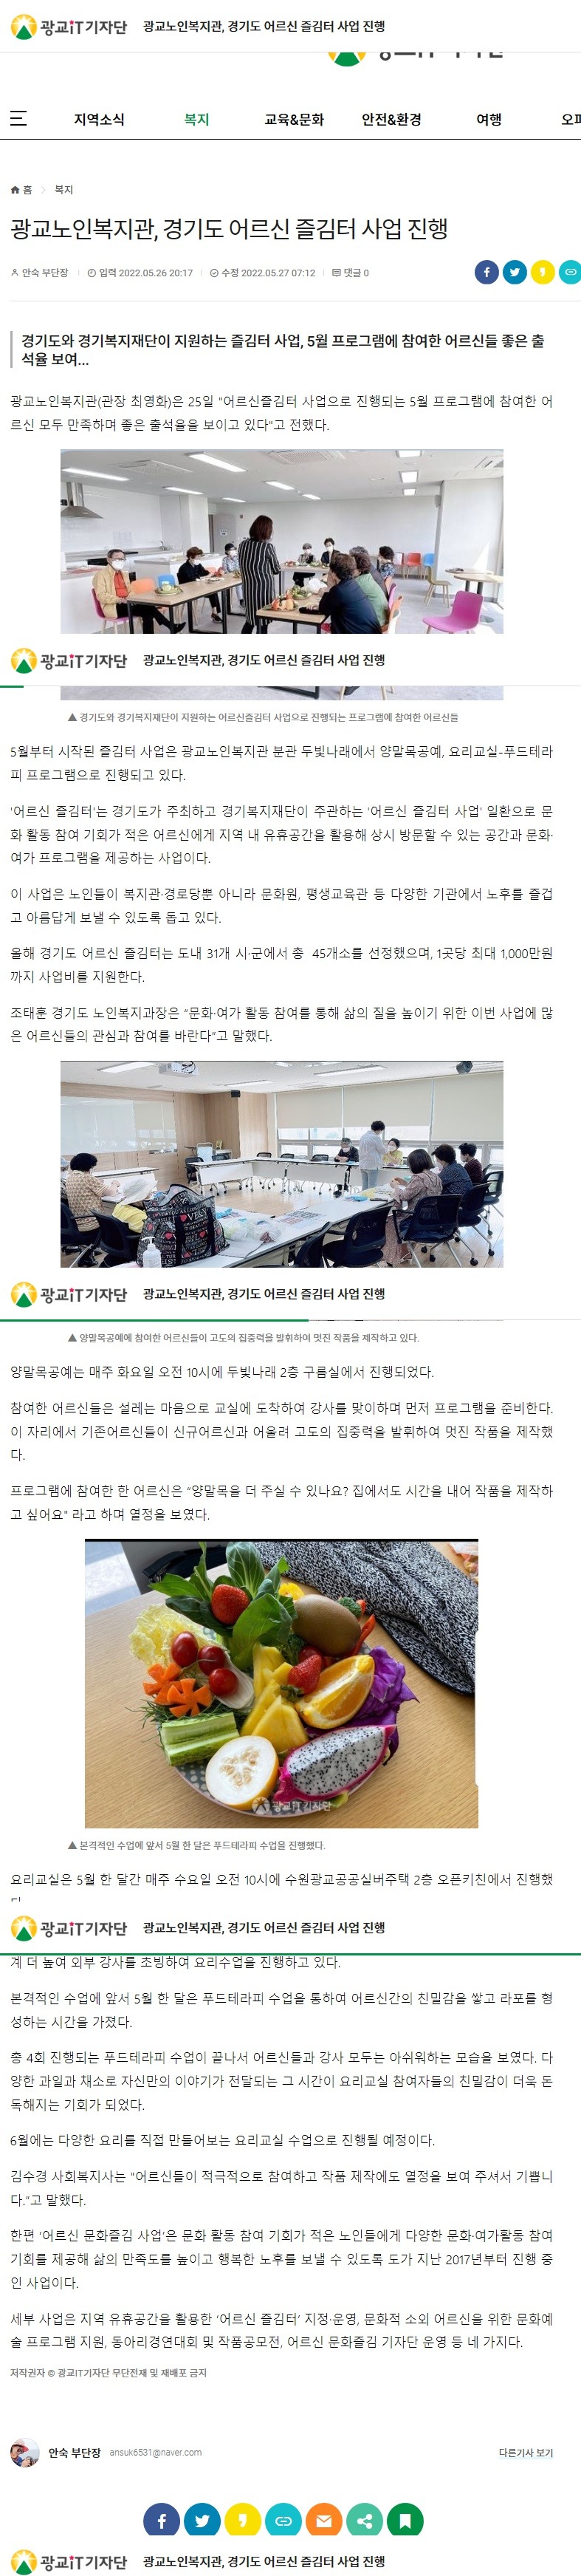 광교노인복지관, 경기도 어르신 즐김터 사업 진행.jpg